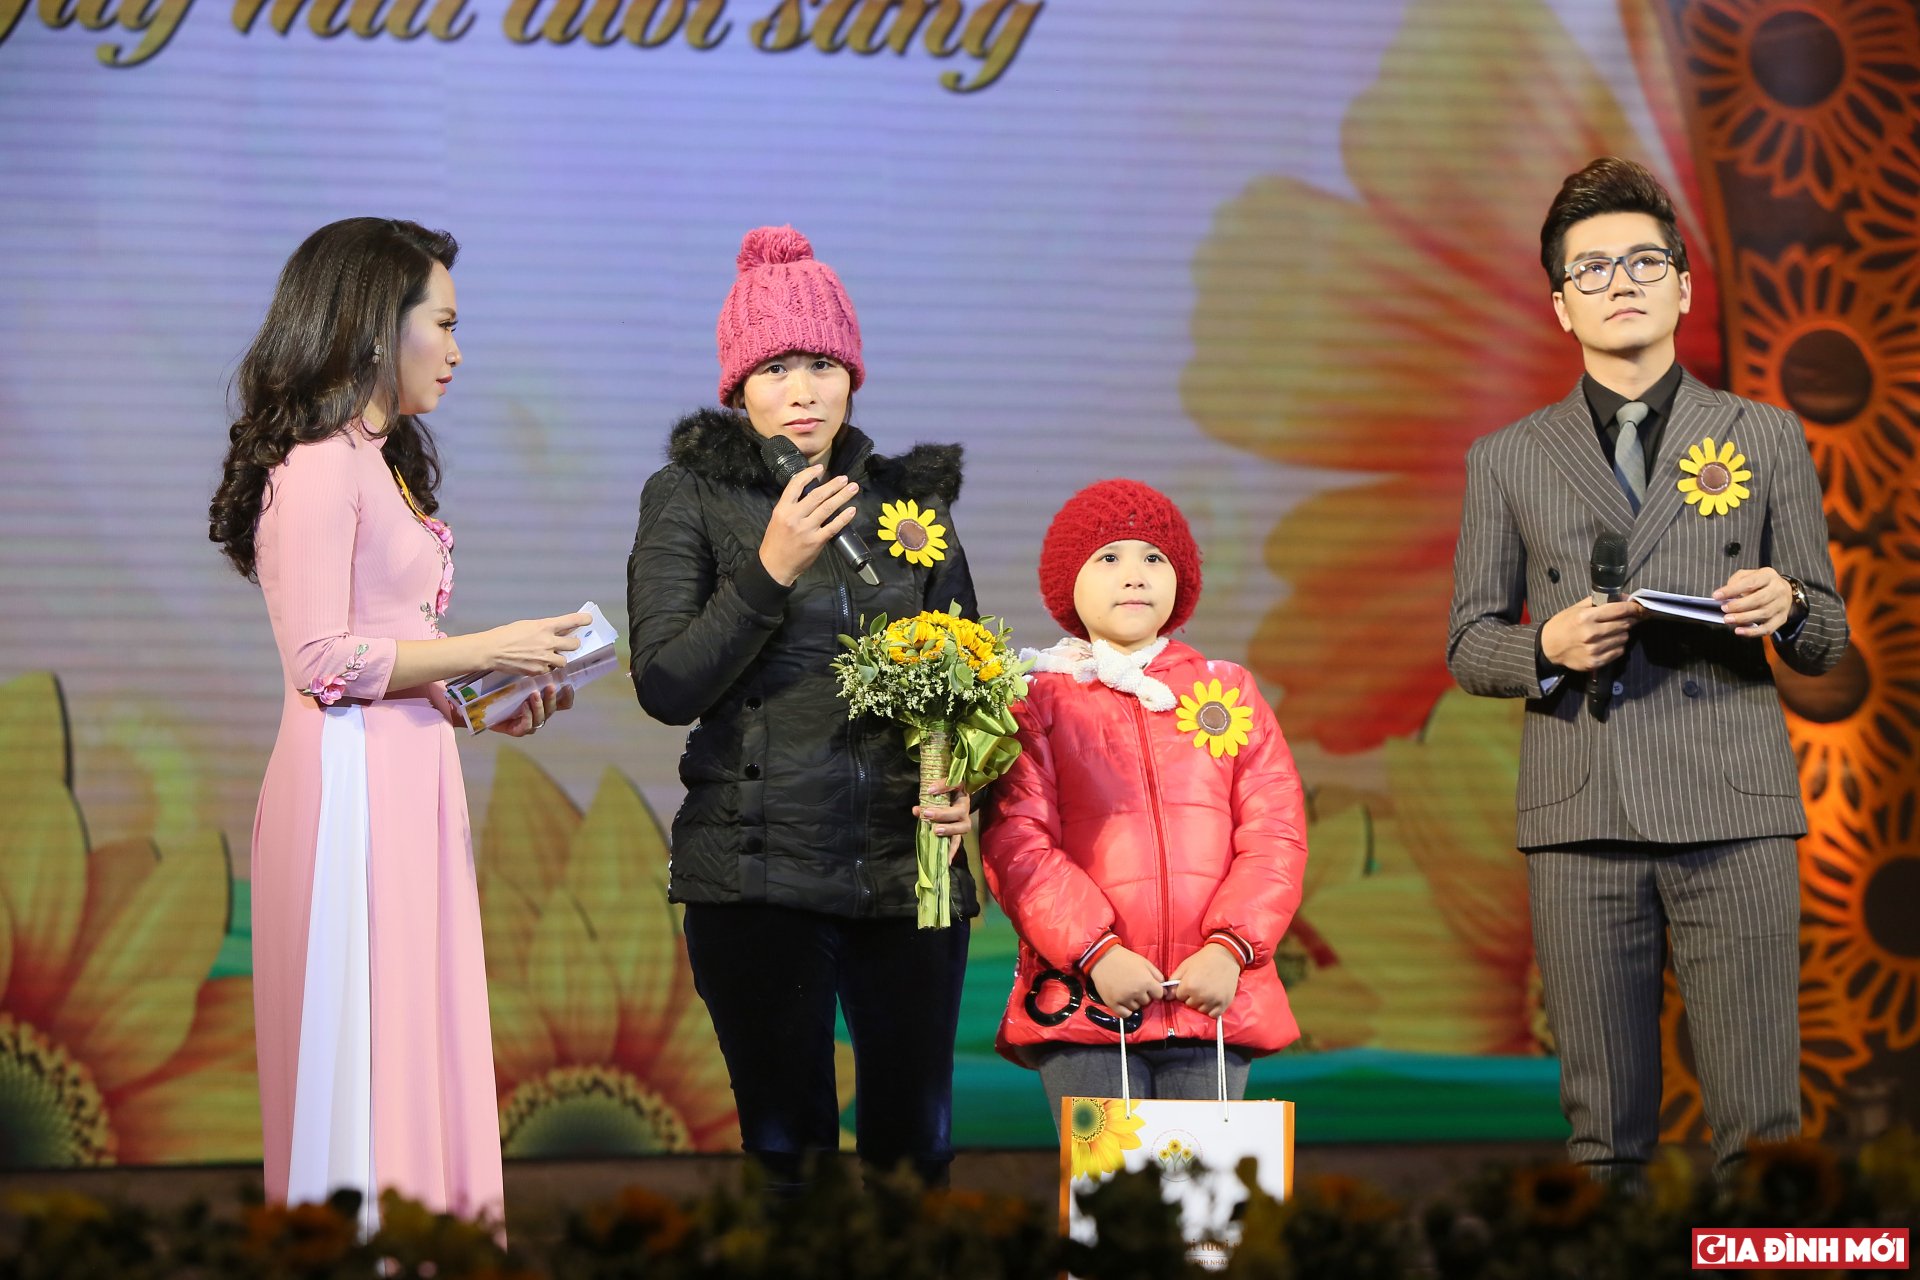 Chị Hà và bé Ngọc chia sẻ câu chuyện của mình trên sân khấu